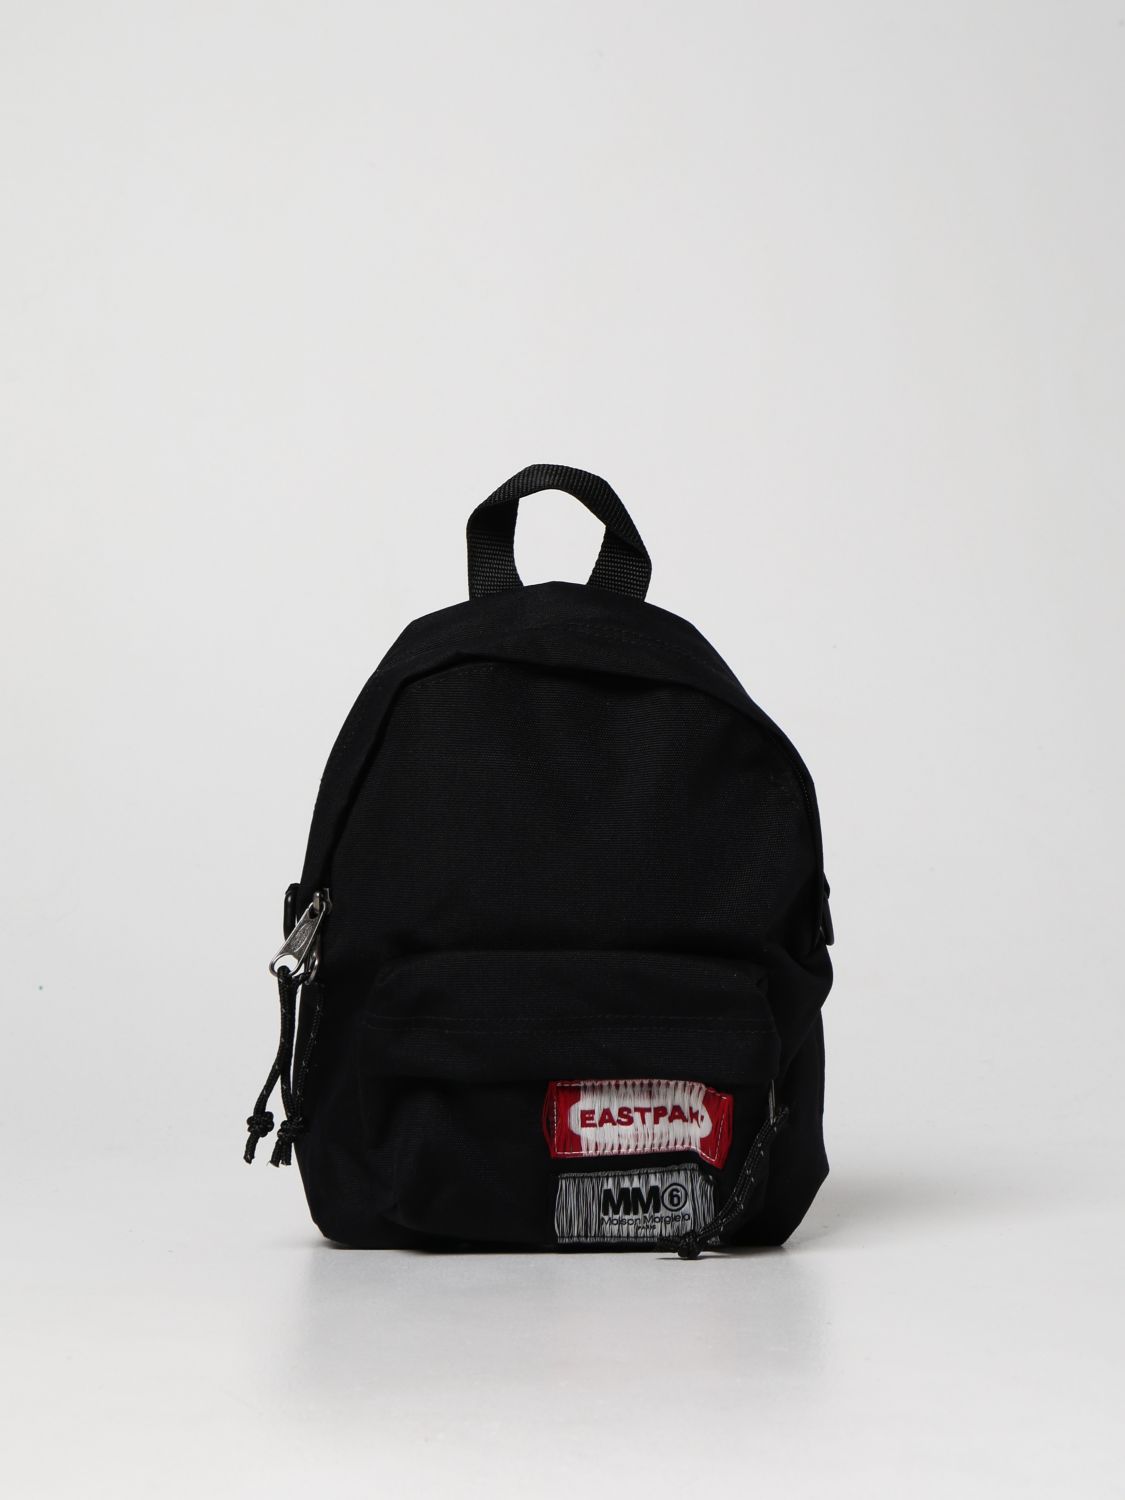 Backpack Eastpak: Mm6 Maison Margiela x Eastpak backpack with shoulder strap in nylon black 1